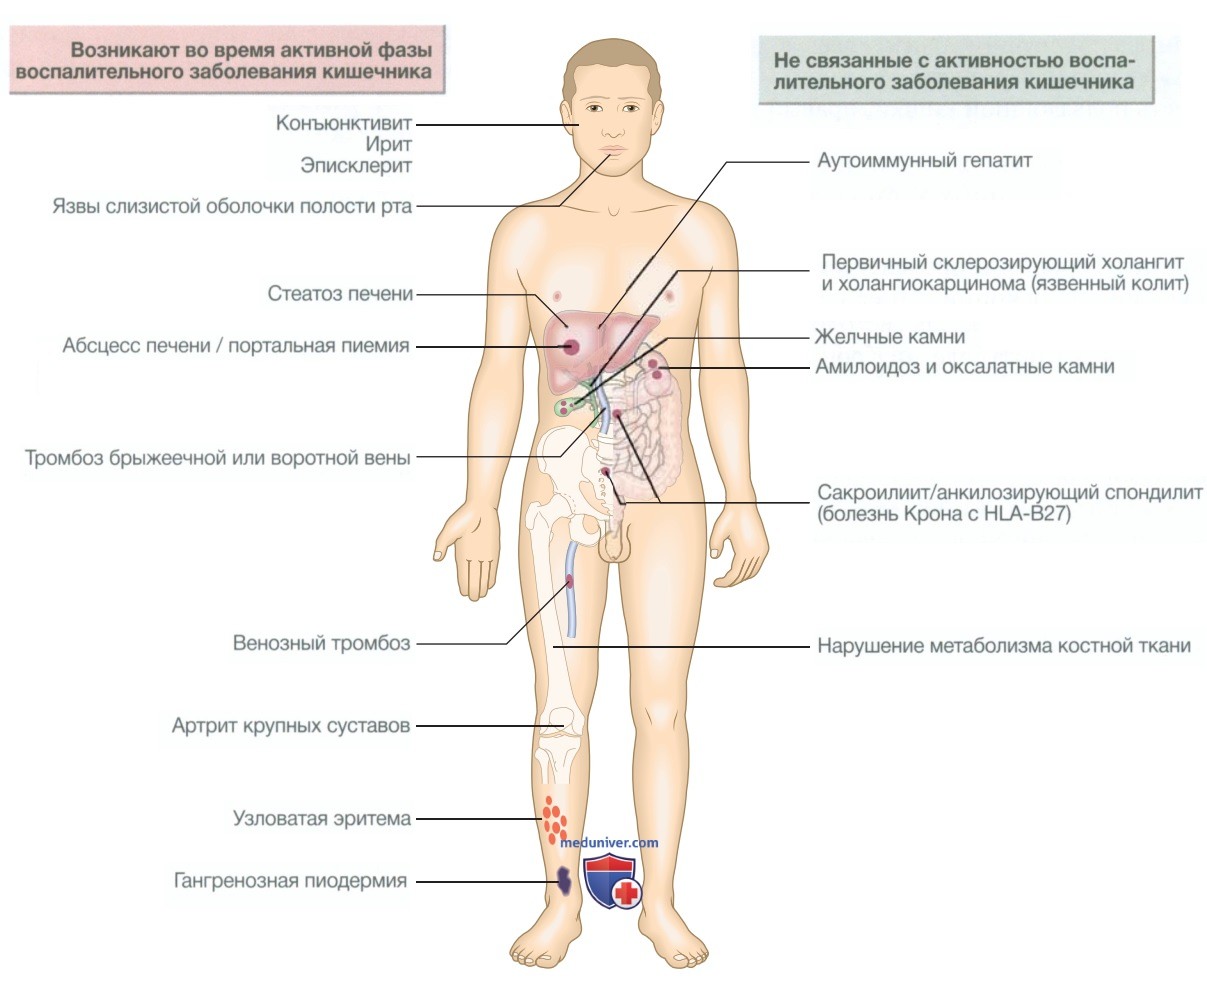 Воспалительные заболевания кишечника (язвенный колит, болезнь Крона)